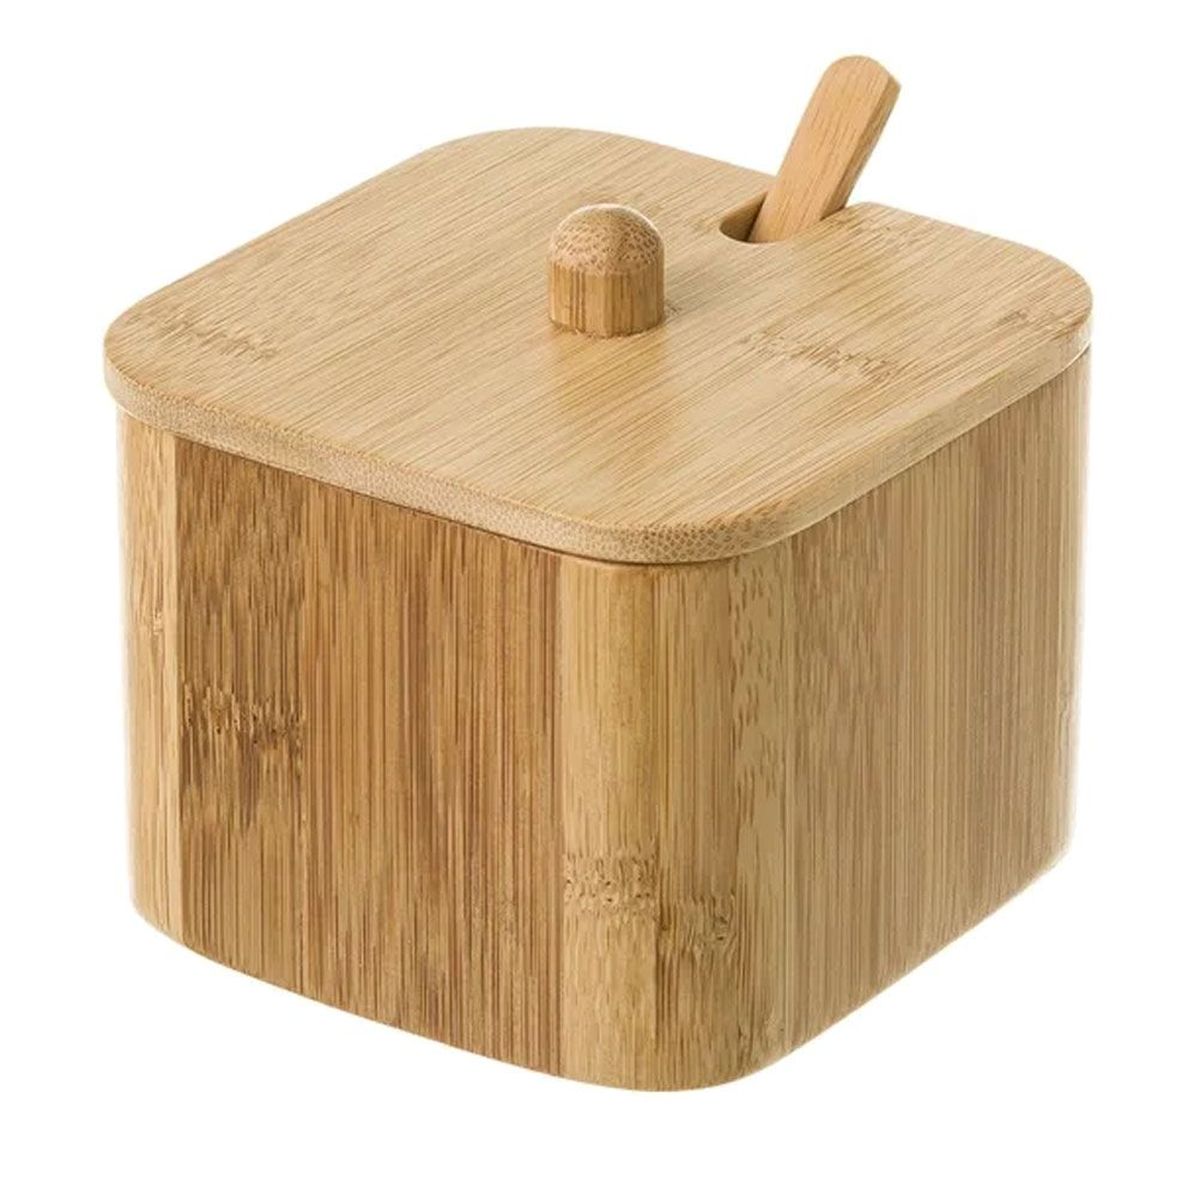 Bamboo salt or sugar box